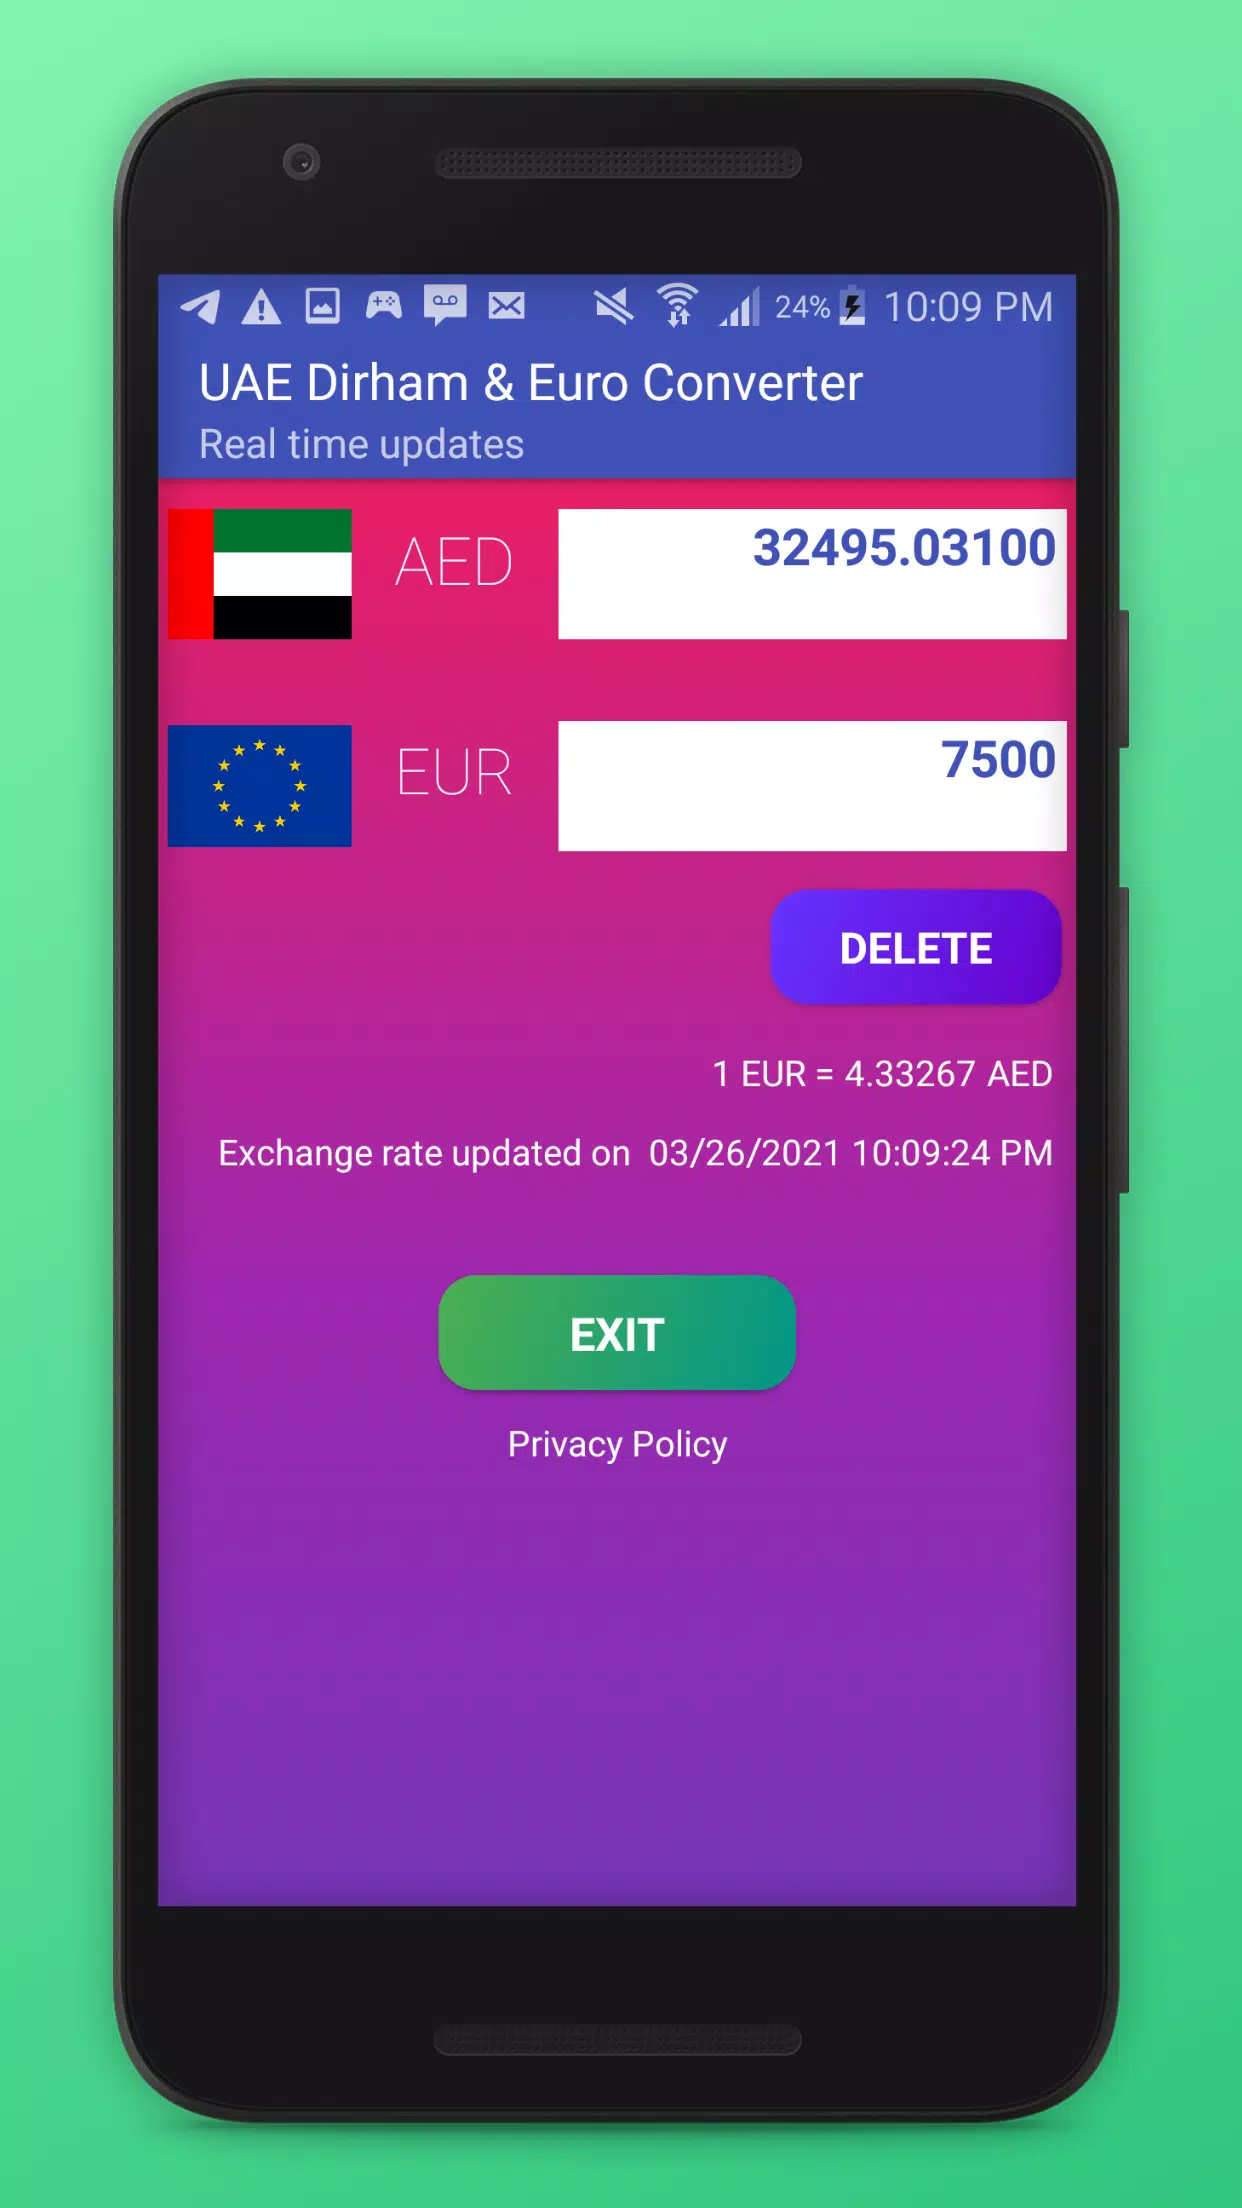 UAE Dirham & Euro Converter - AED & EUR APK pour Android Télécharger